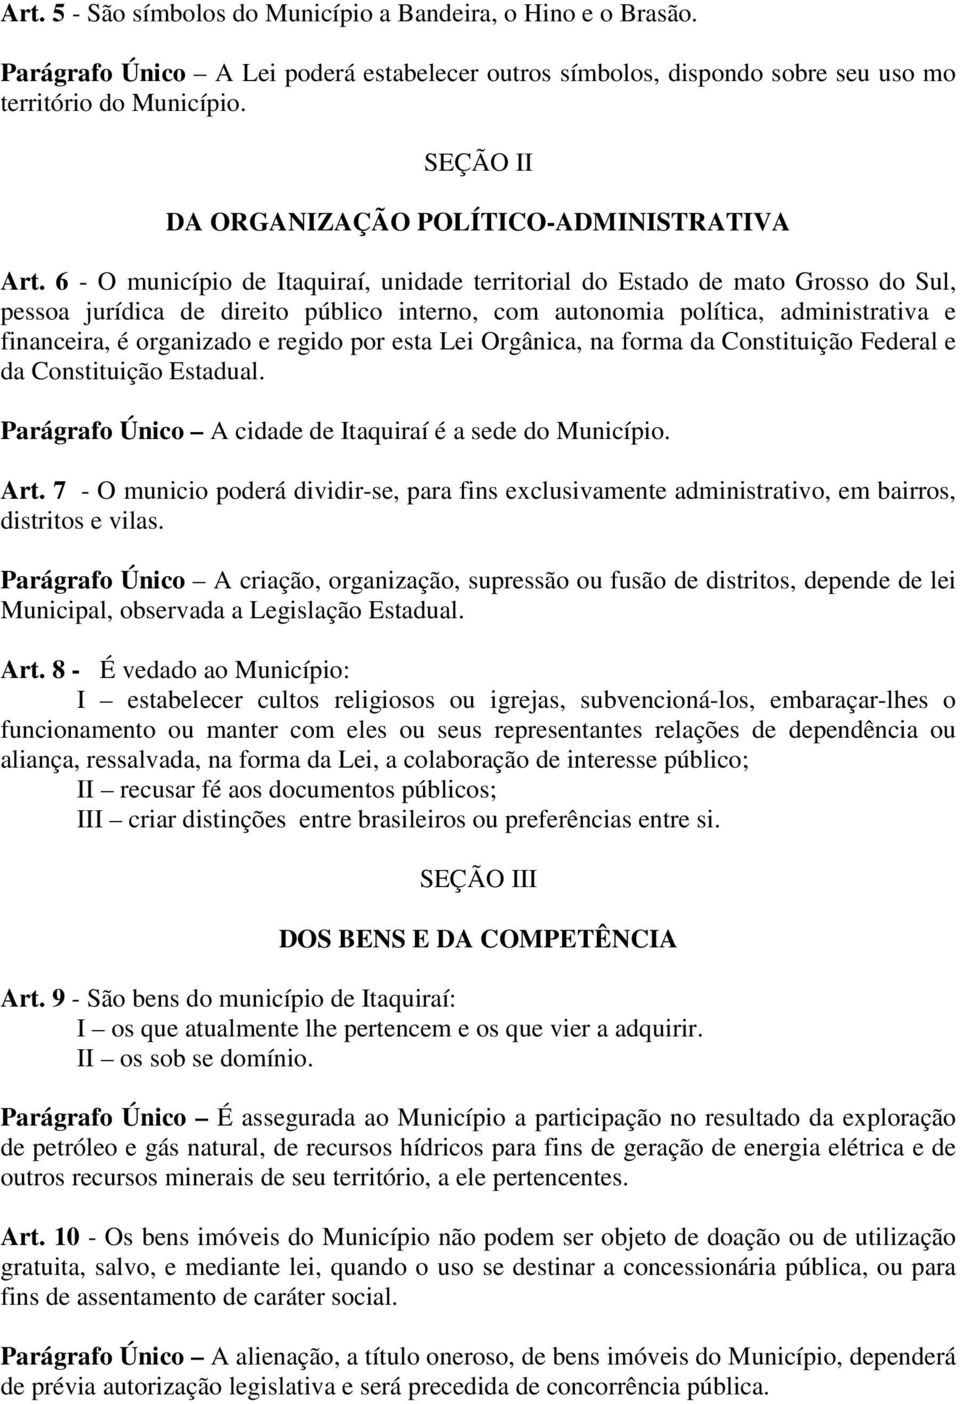 6 - O município de Itaquiraí, unidade territorial do Estado de mato Grosso do Sul, pessoa jurídica de direito público interno, com autonomia política, administrativa e financeira, é organizado e